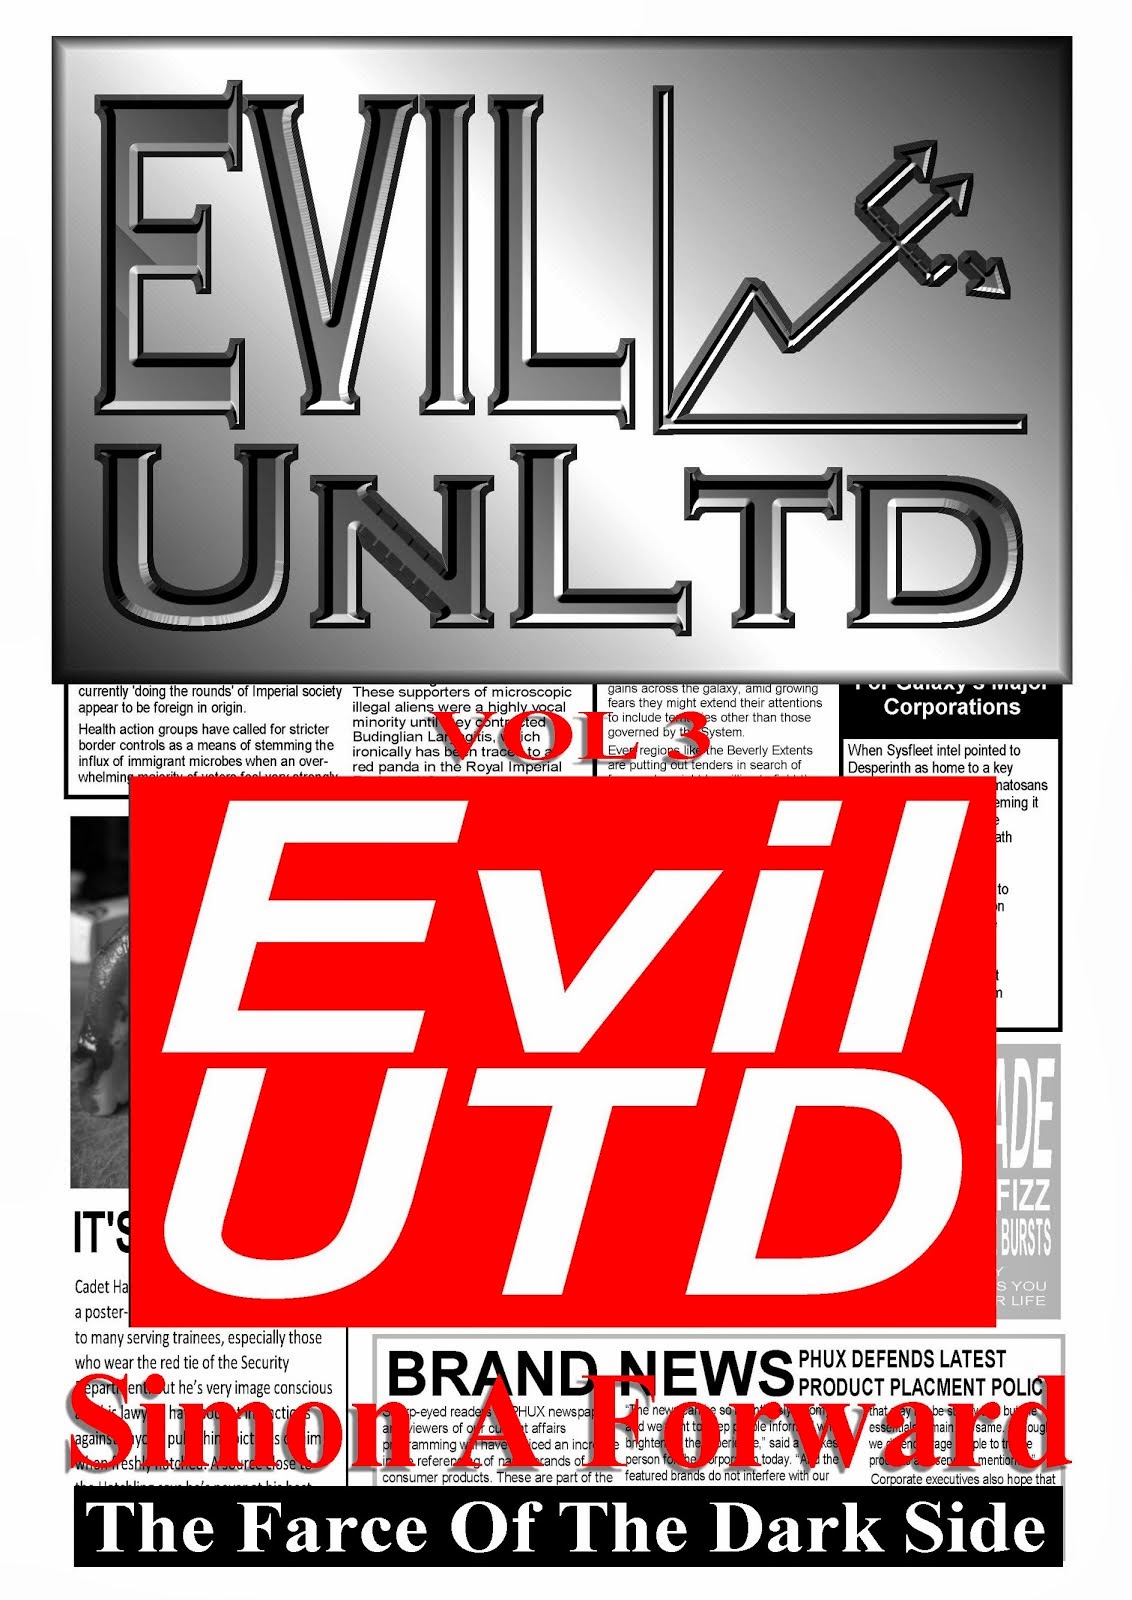 Evil UnLtd Vol 3: EVIL UTD